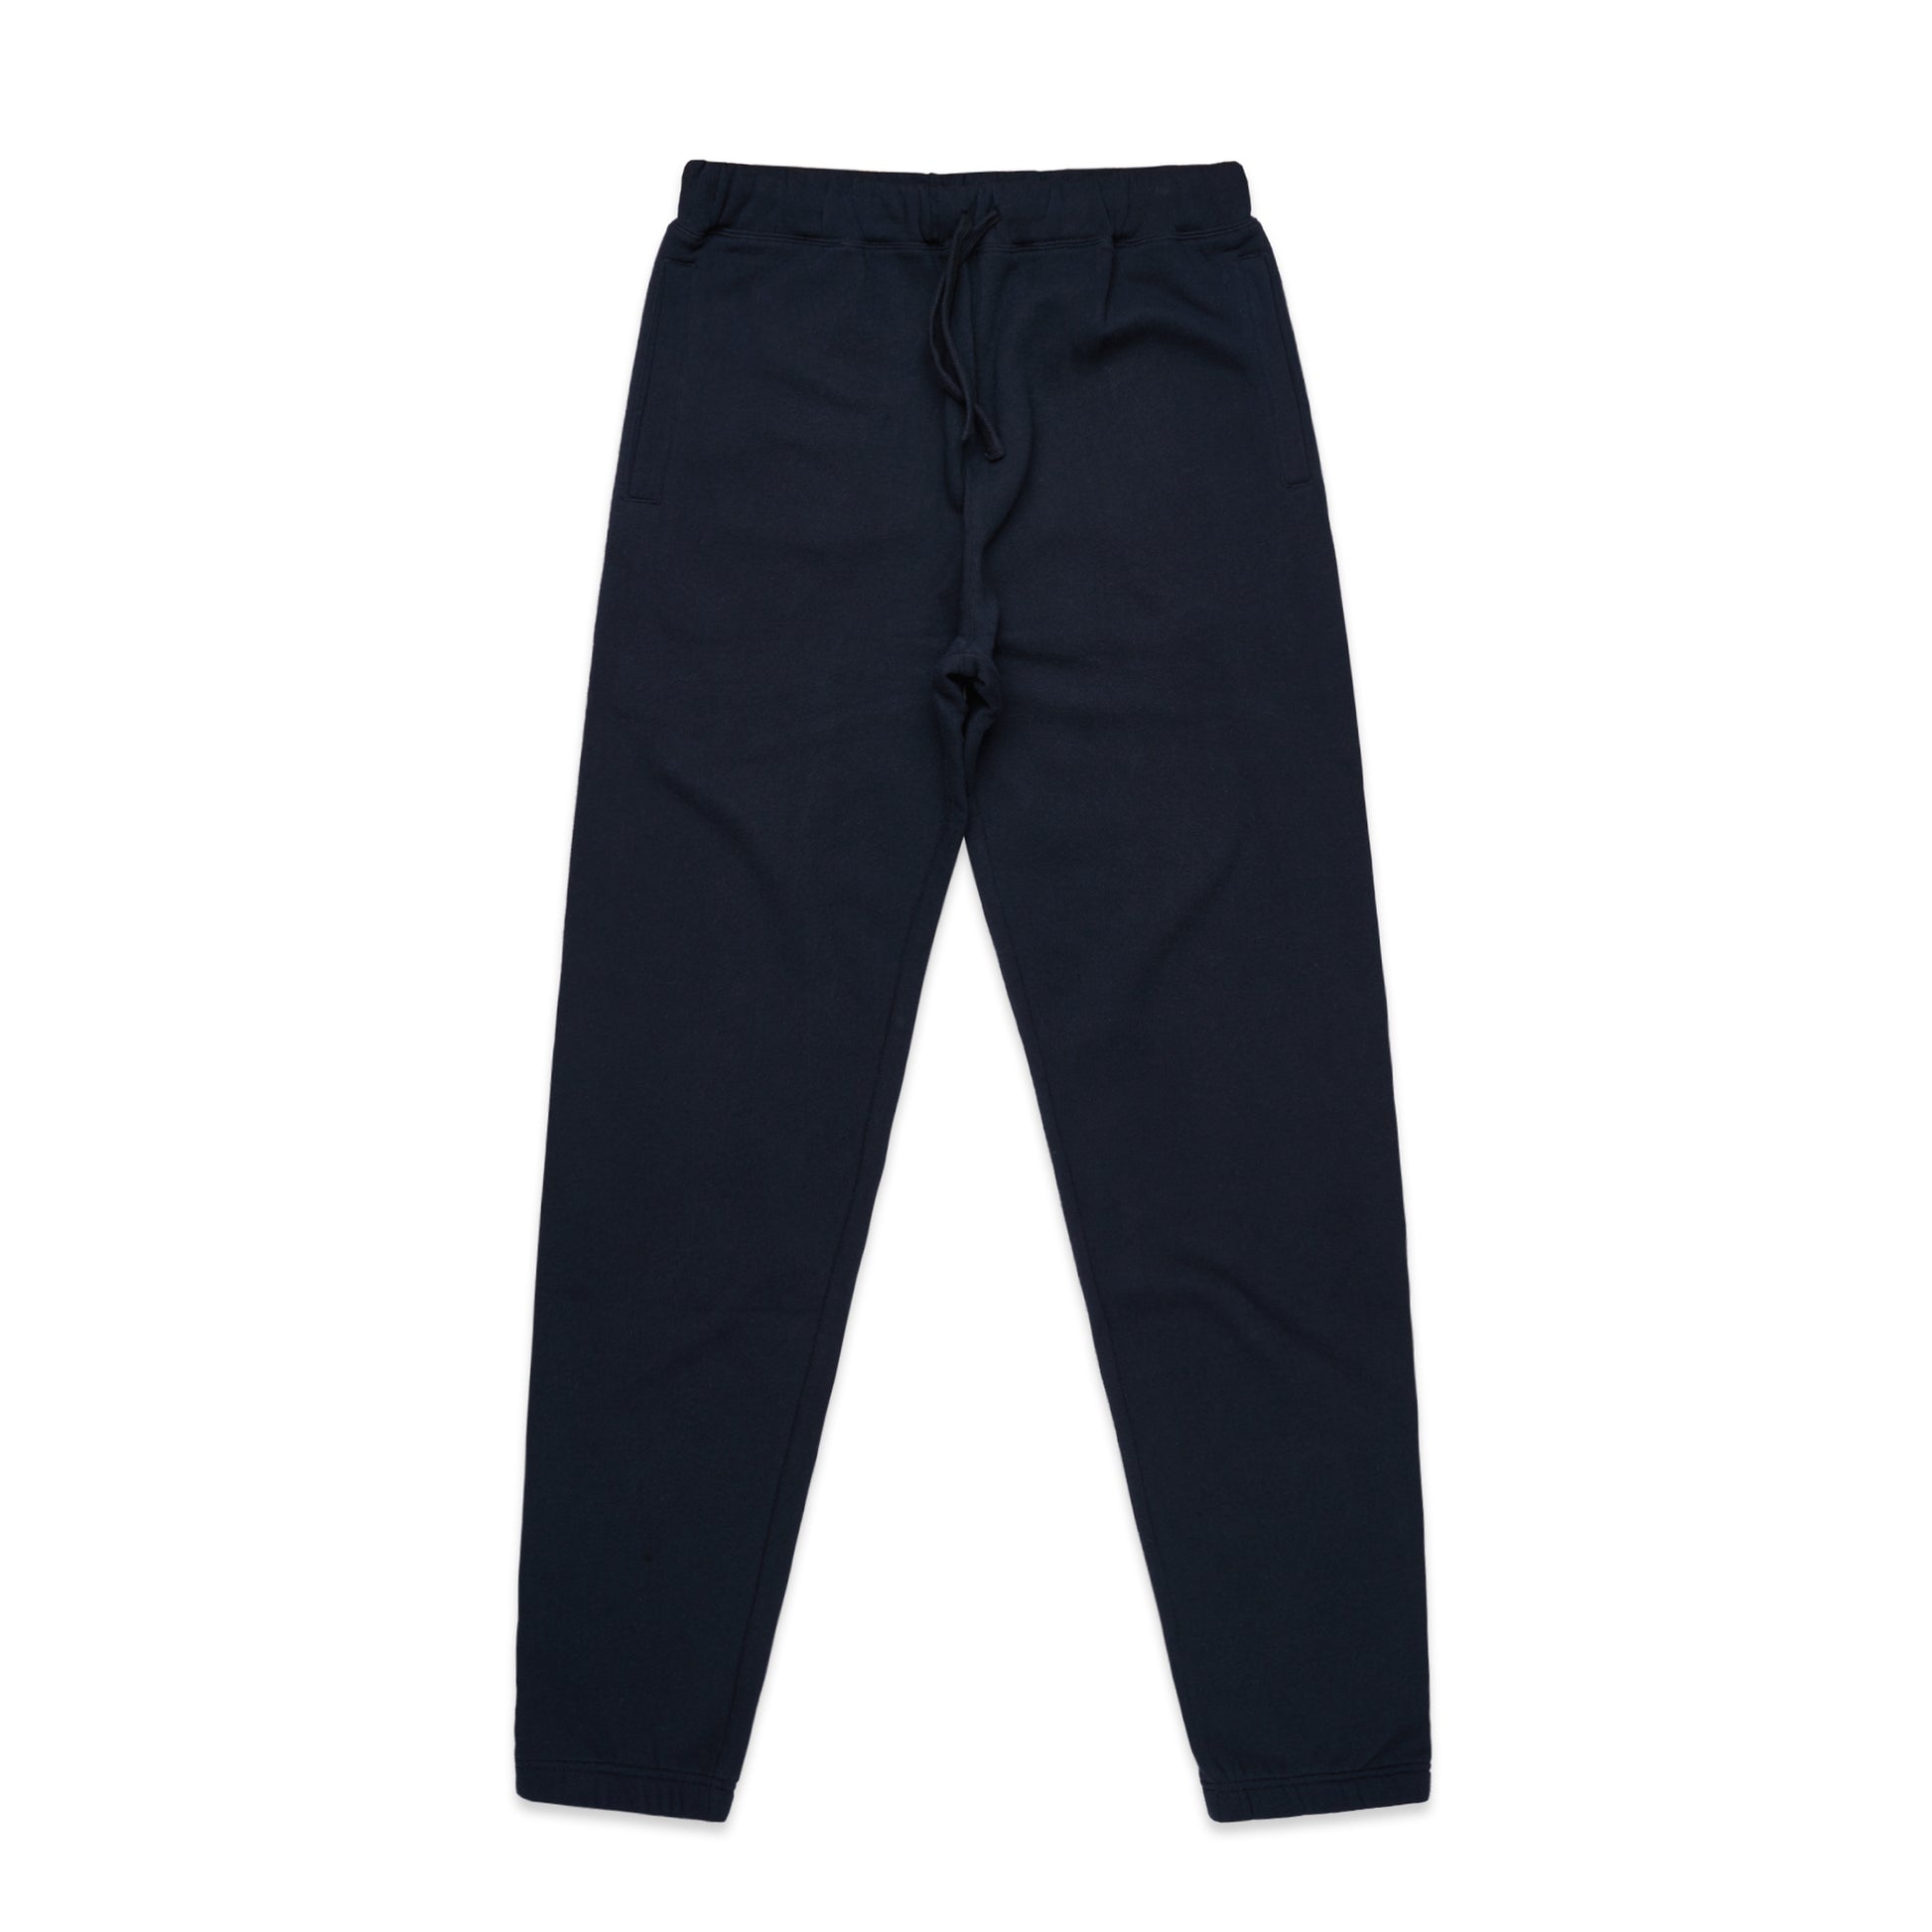 Ascolour Women's Surplus Track Pants (4067)